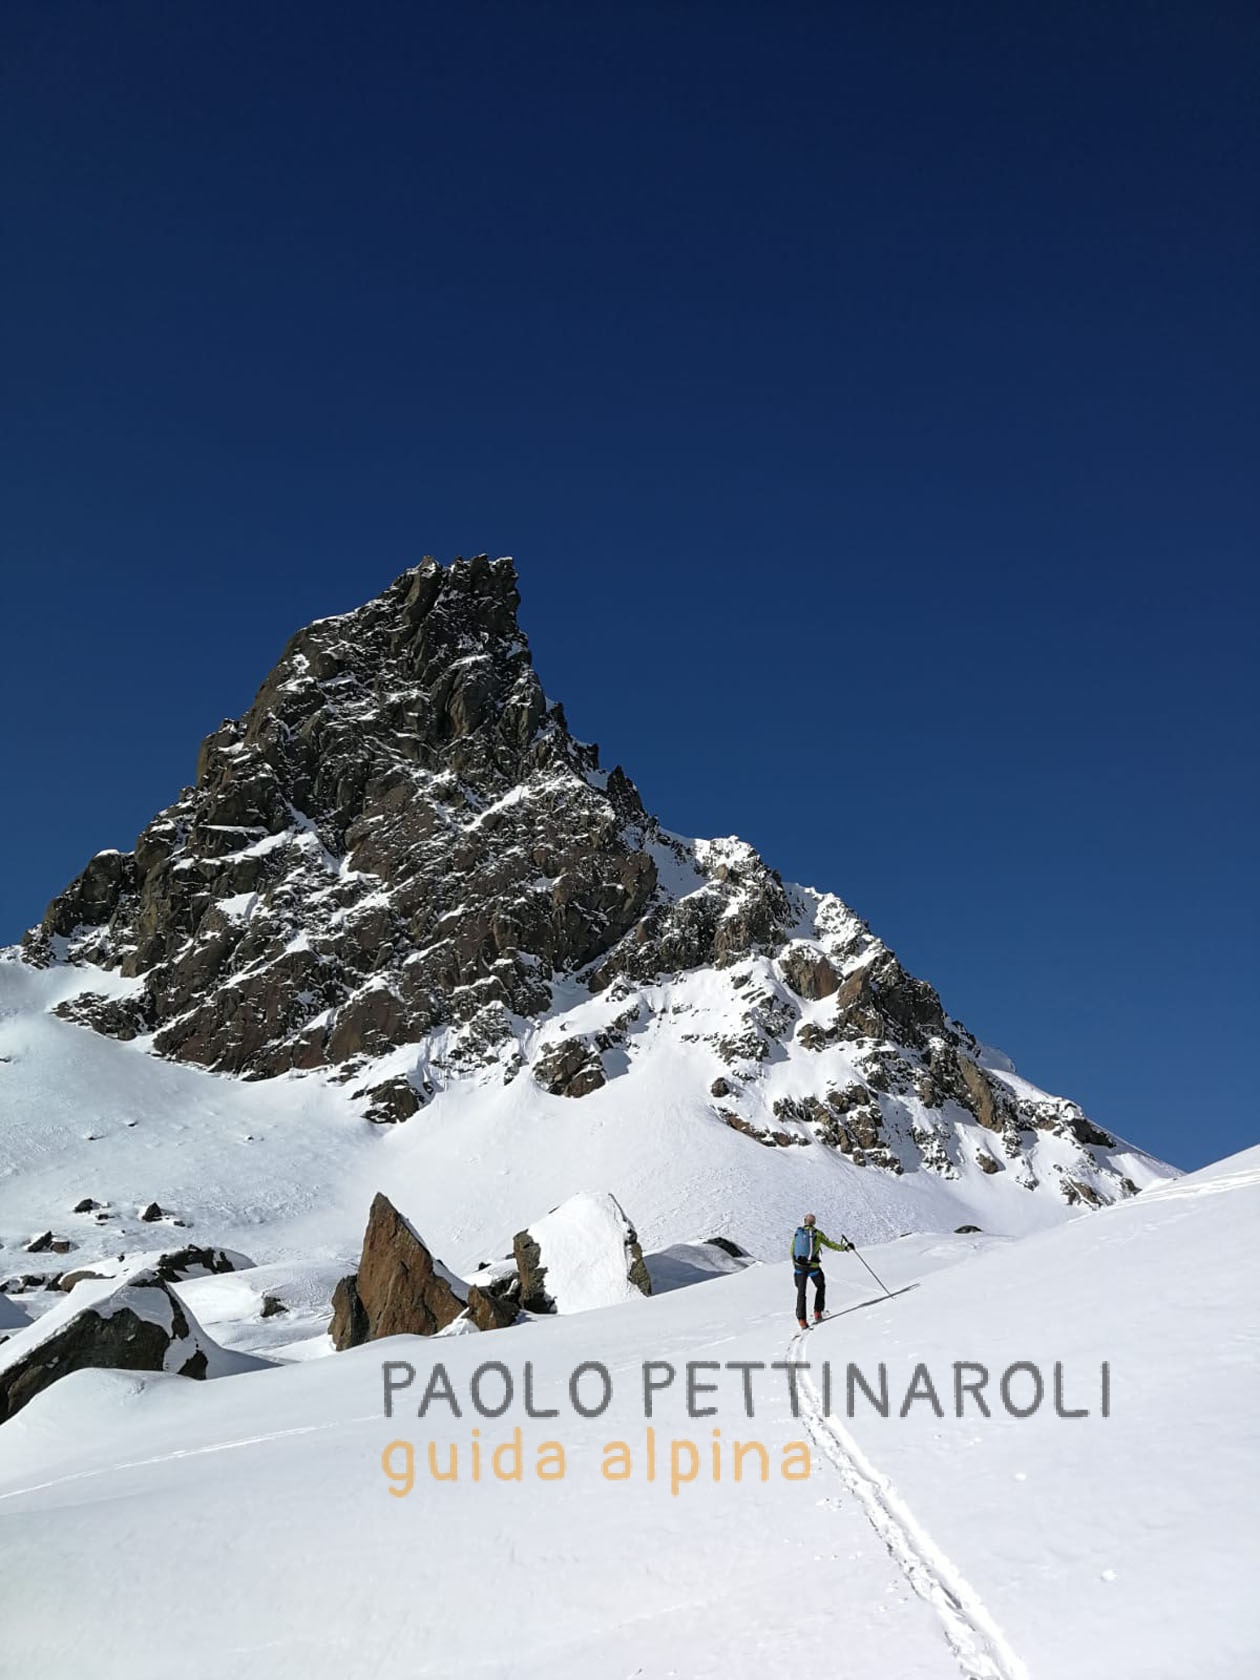 4db35574-scialpinismo_paolo pettinaroli guida alpina